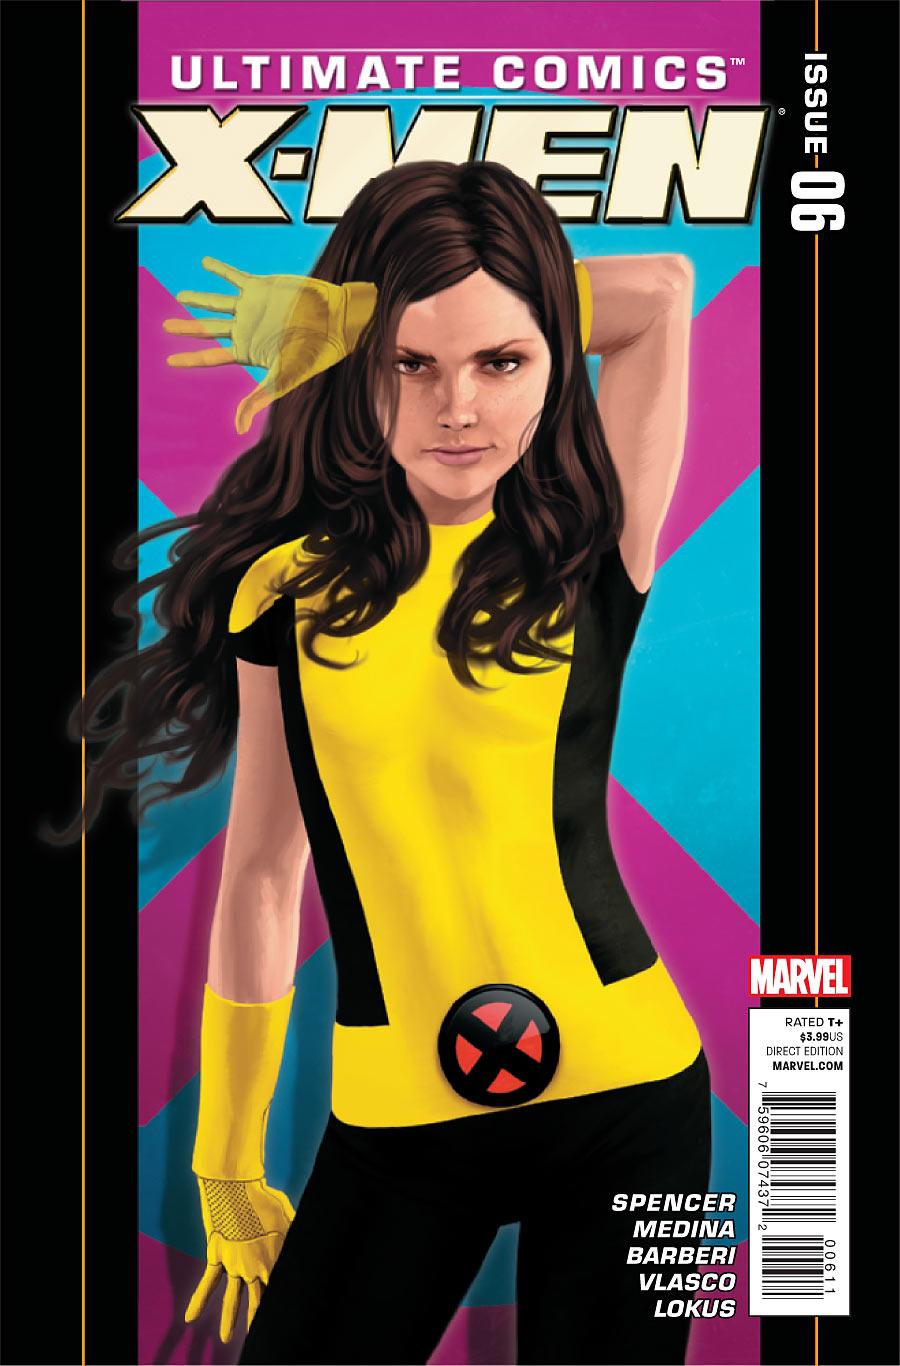 Ultimate Comics X-Men Vol. 1 #6